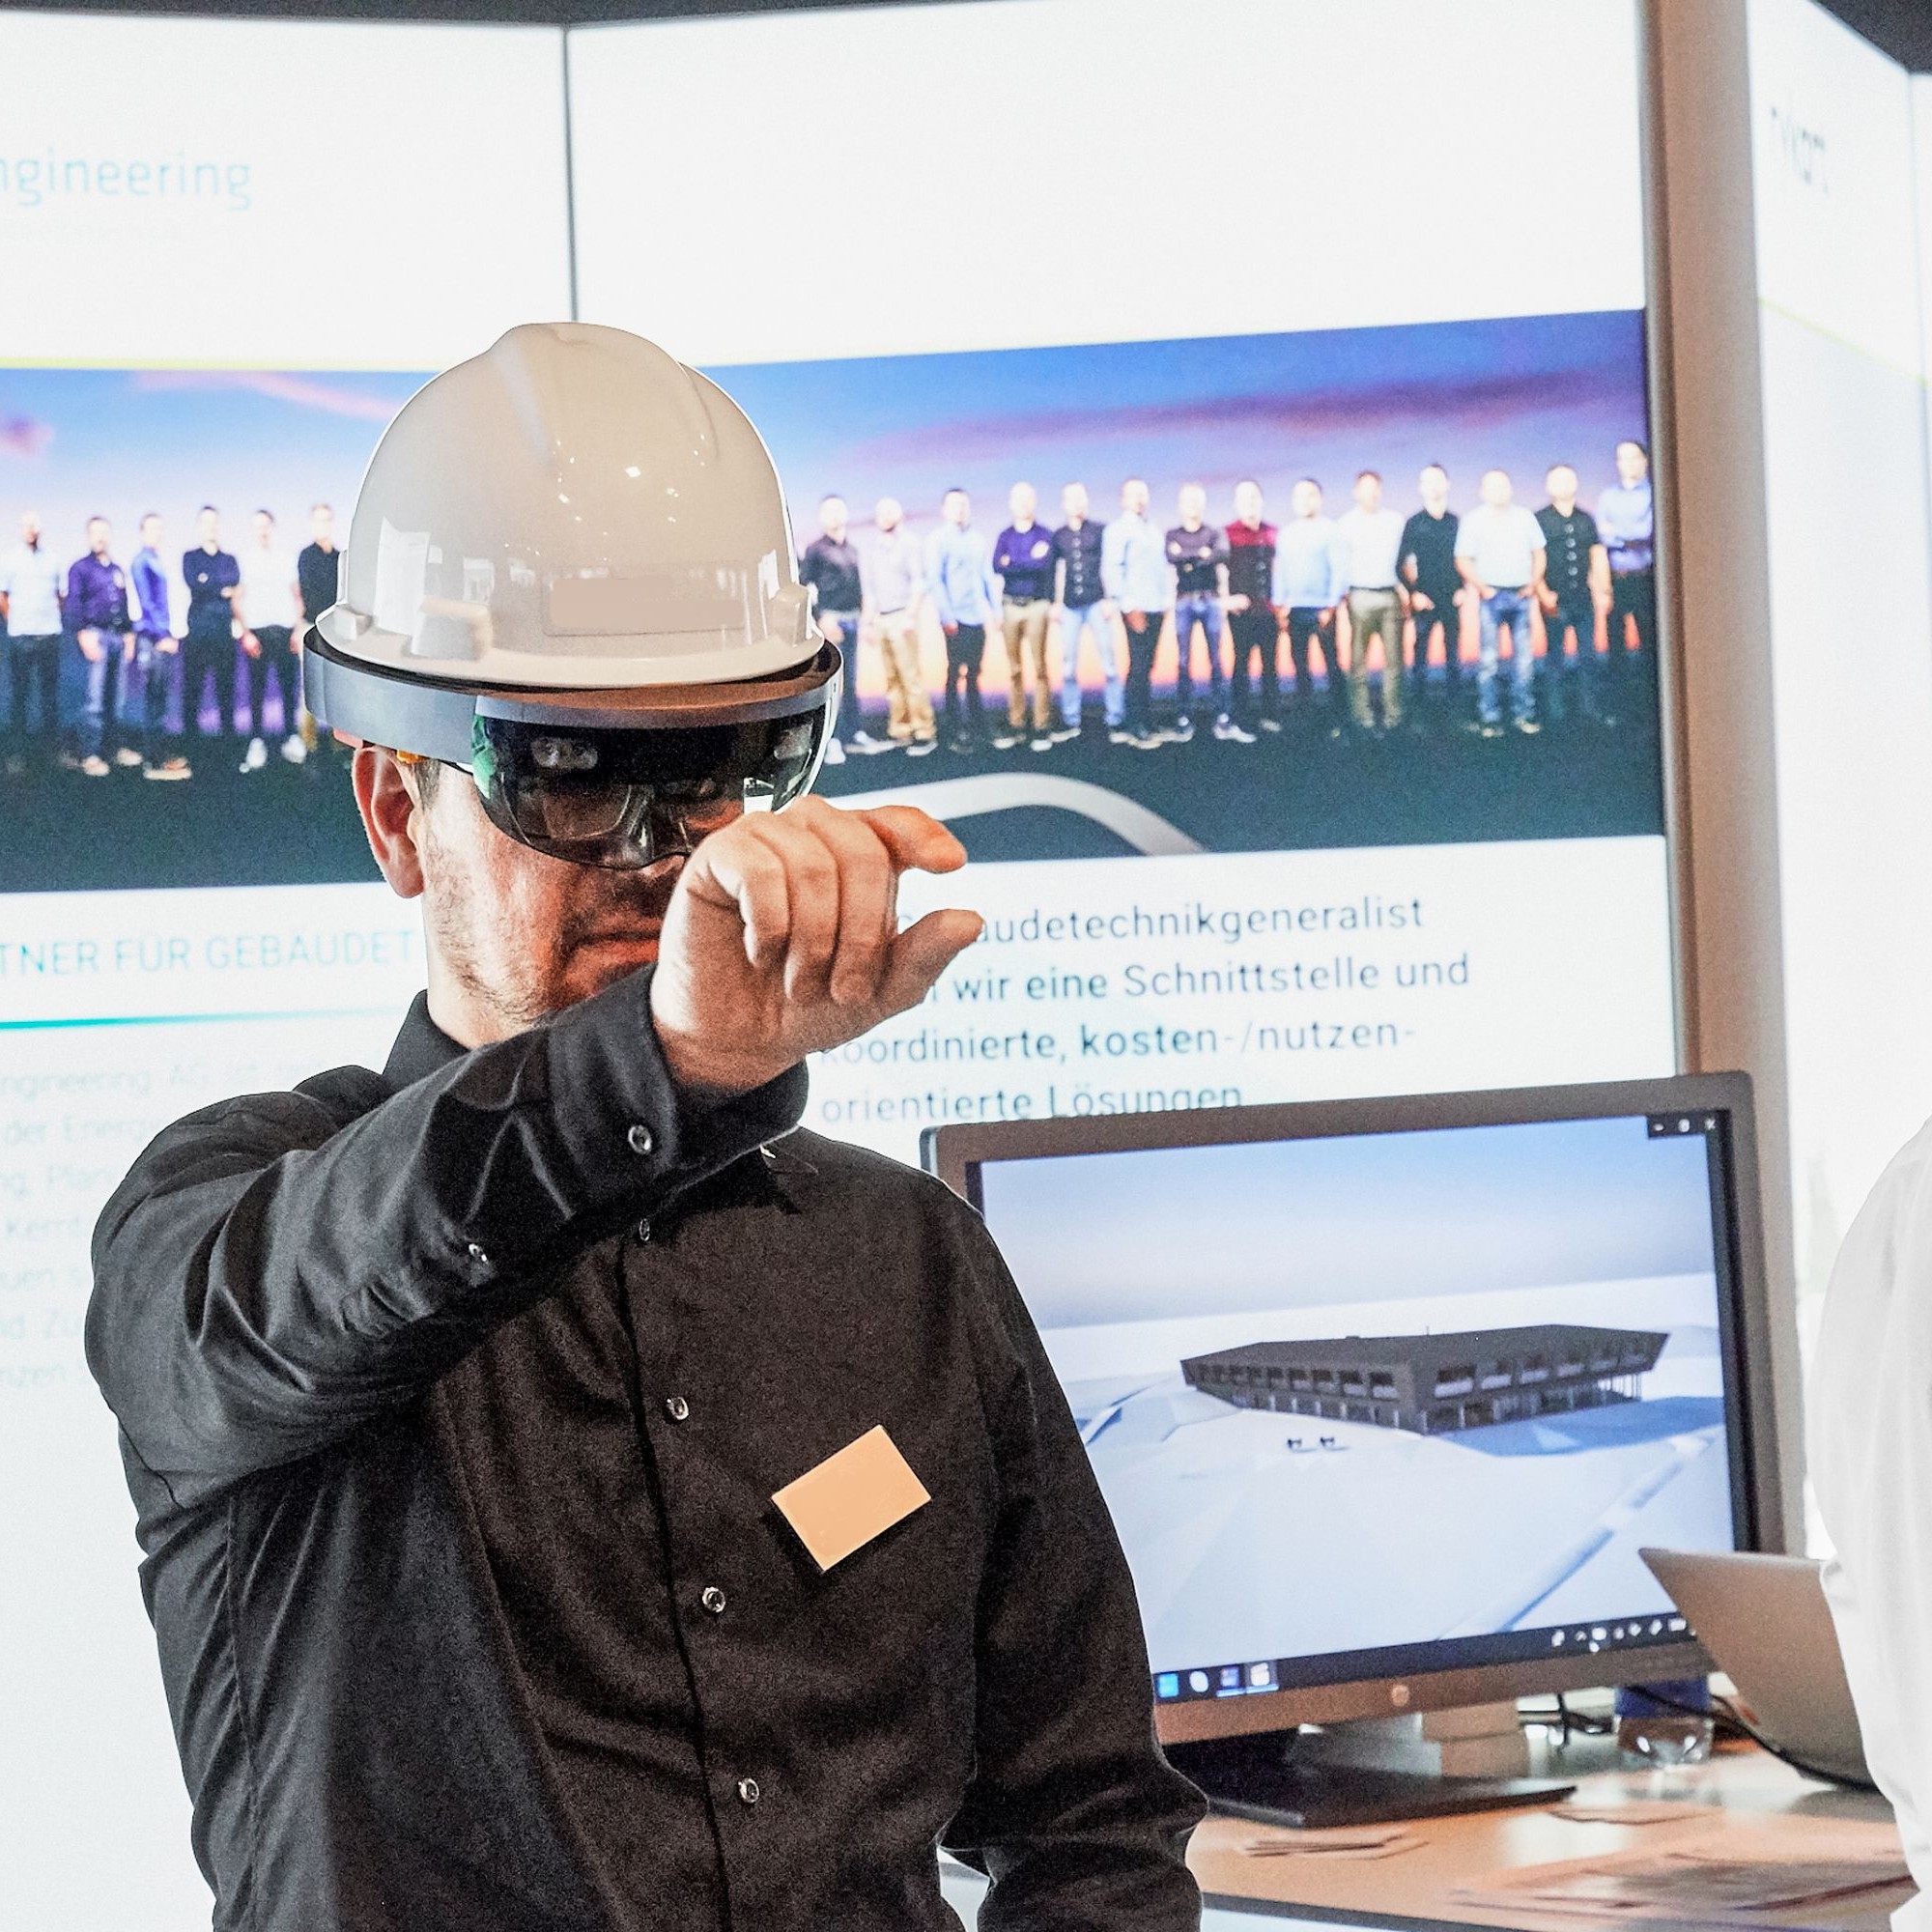 Projektbetrachtung mit in den Bauhelm integrierter VR-Brille: Die Digitalisierung verändert den Alltag nicht nur der Planer und Architekten, sondern zunehmend auch der Ausführenden auf der Baustelle. Portable Elektronikgeräte ersetzen mehr und mehr den kl